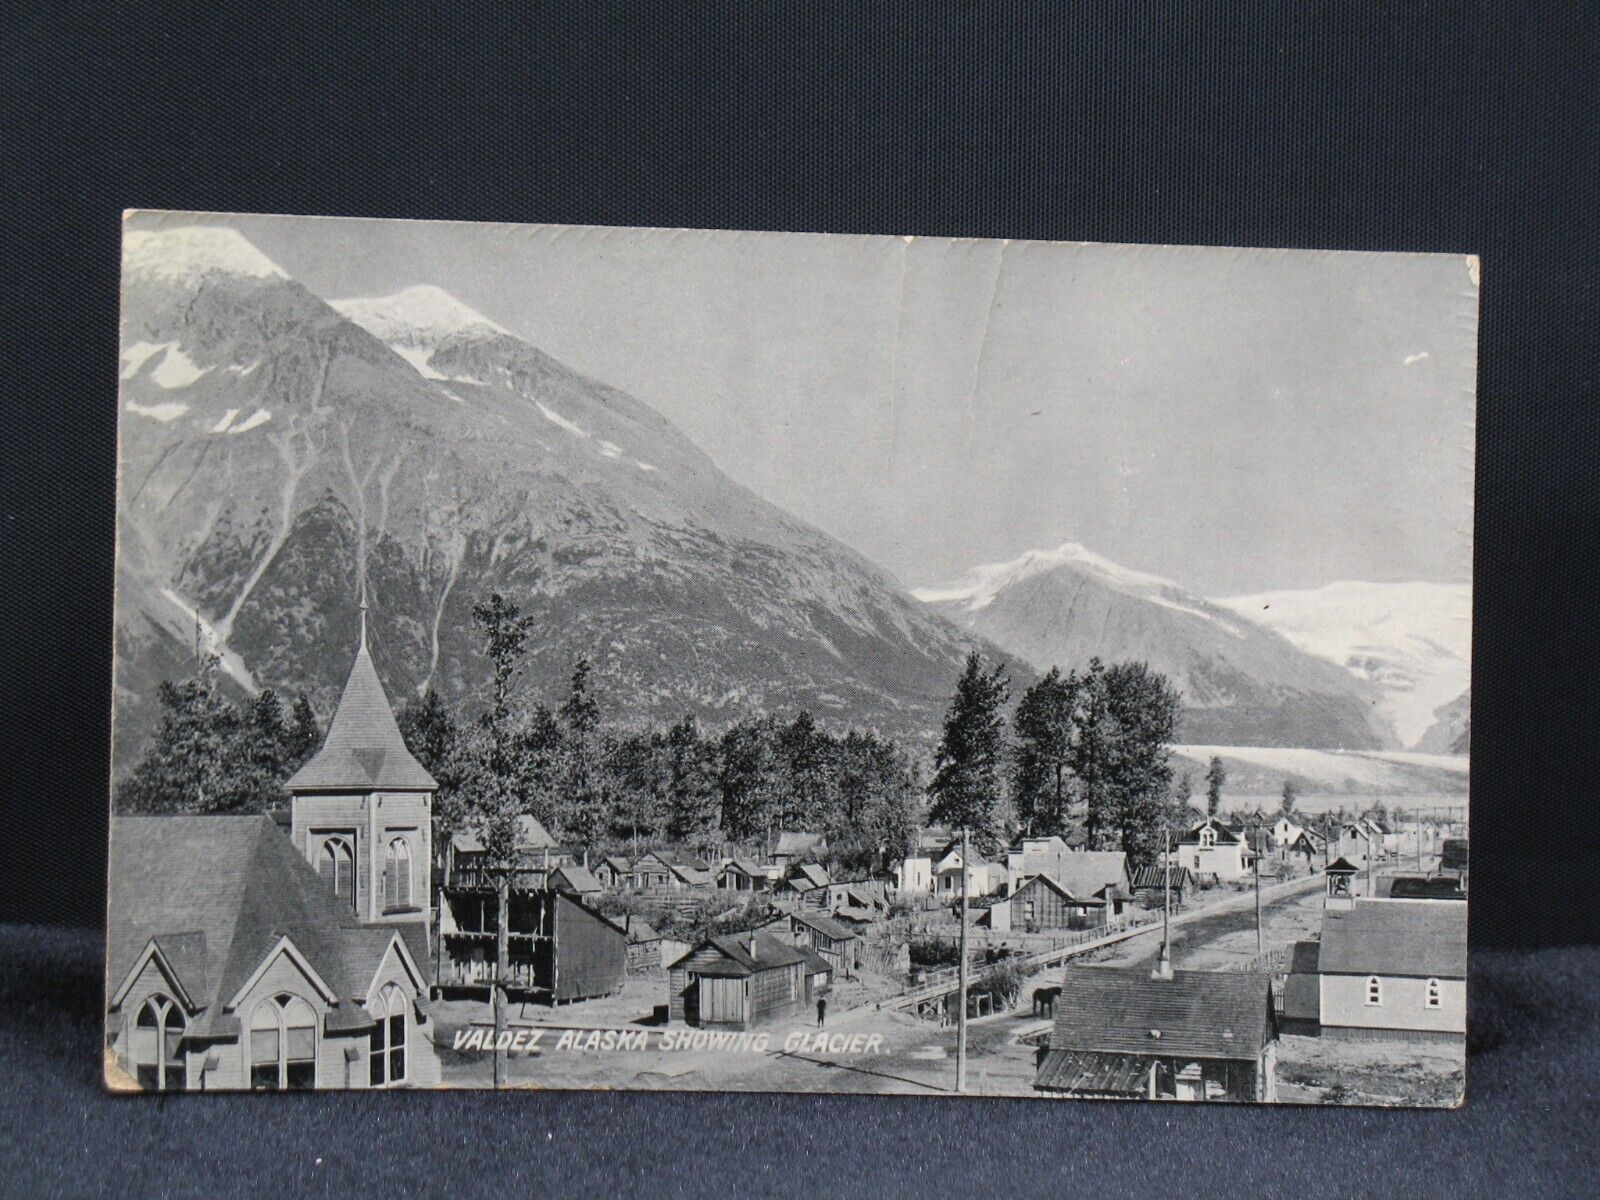 Valdez Alaska Showing Glacier Postcard